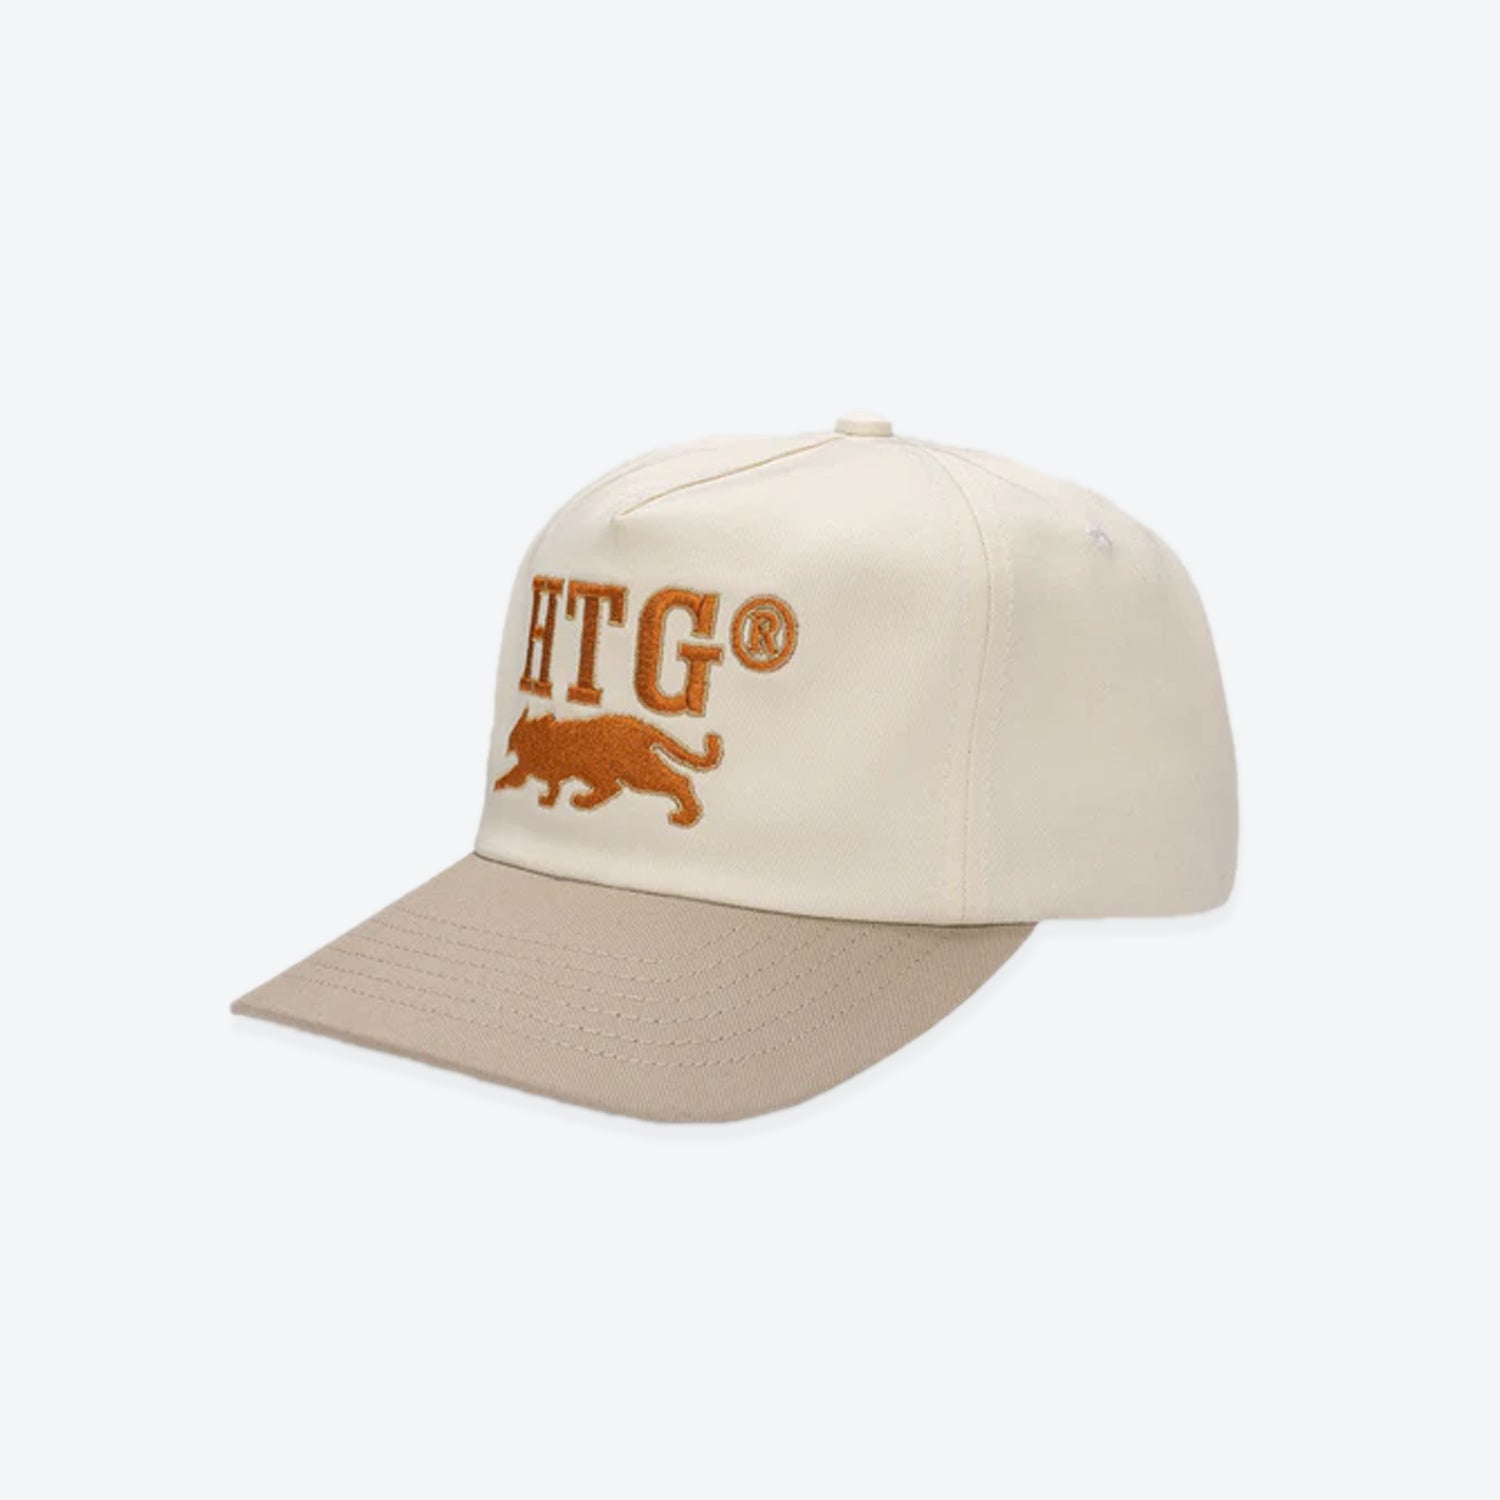 H.T.G. Cap/Hat - Cream